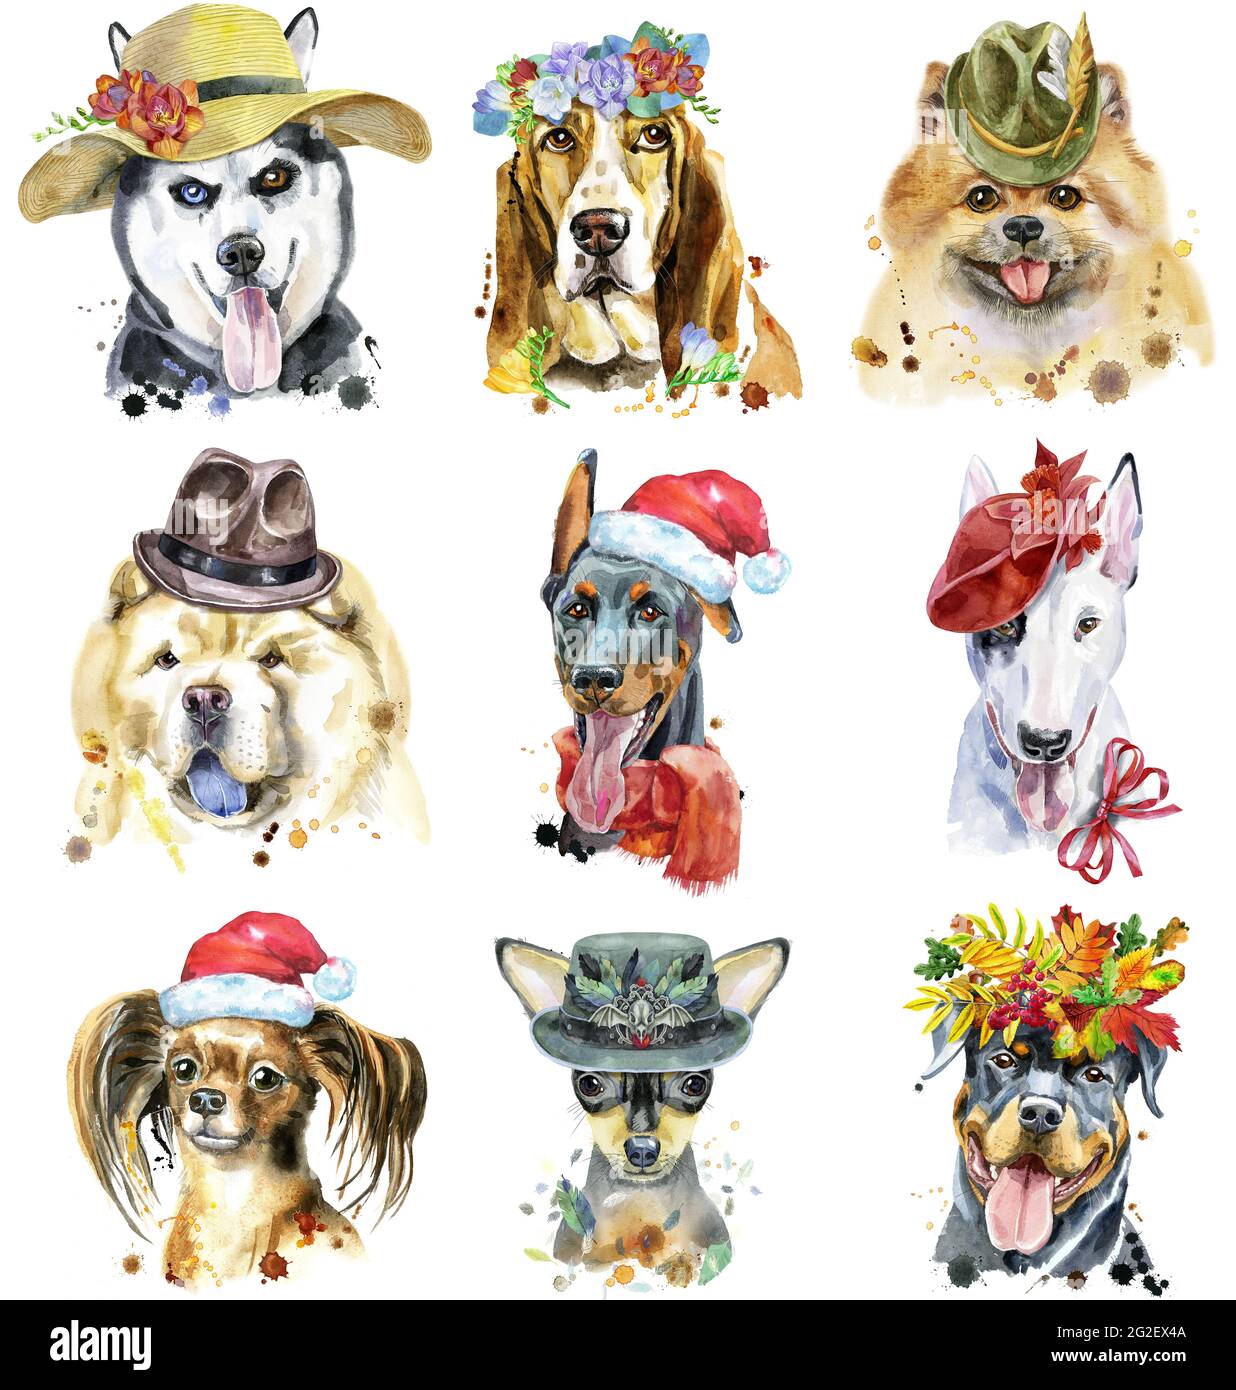 Carino set di ritratti acquerello di cani. Per la grafica della t-shirt. Illustrazione dei cani acquerelli Foto Stock